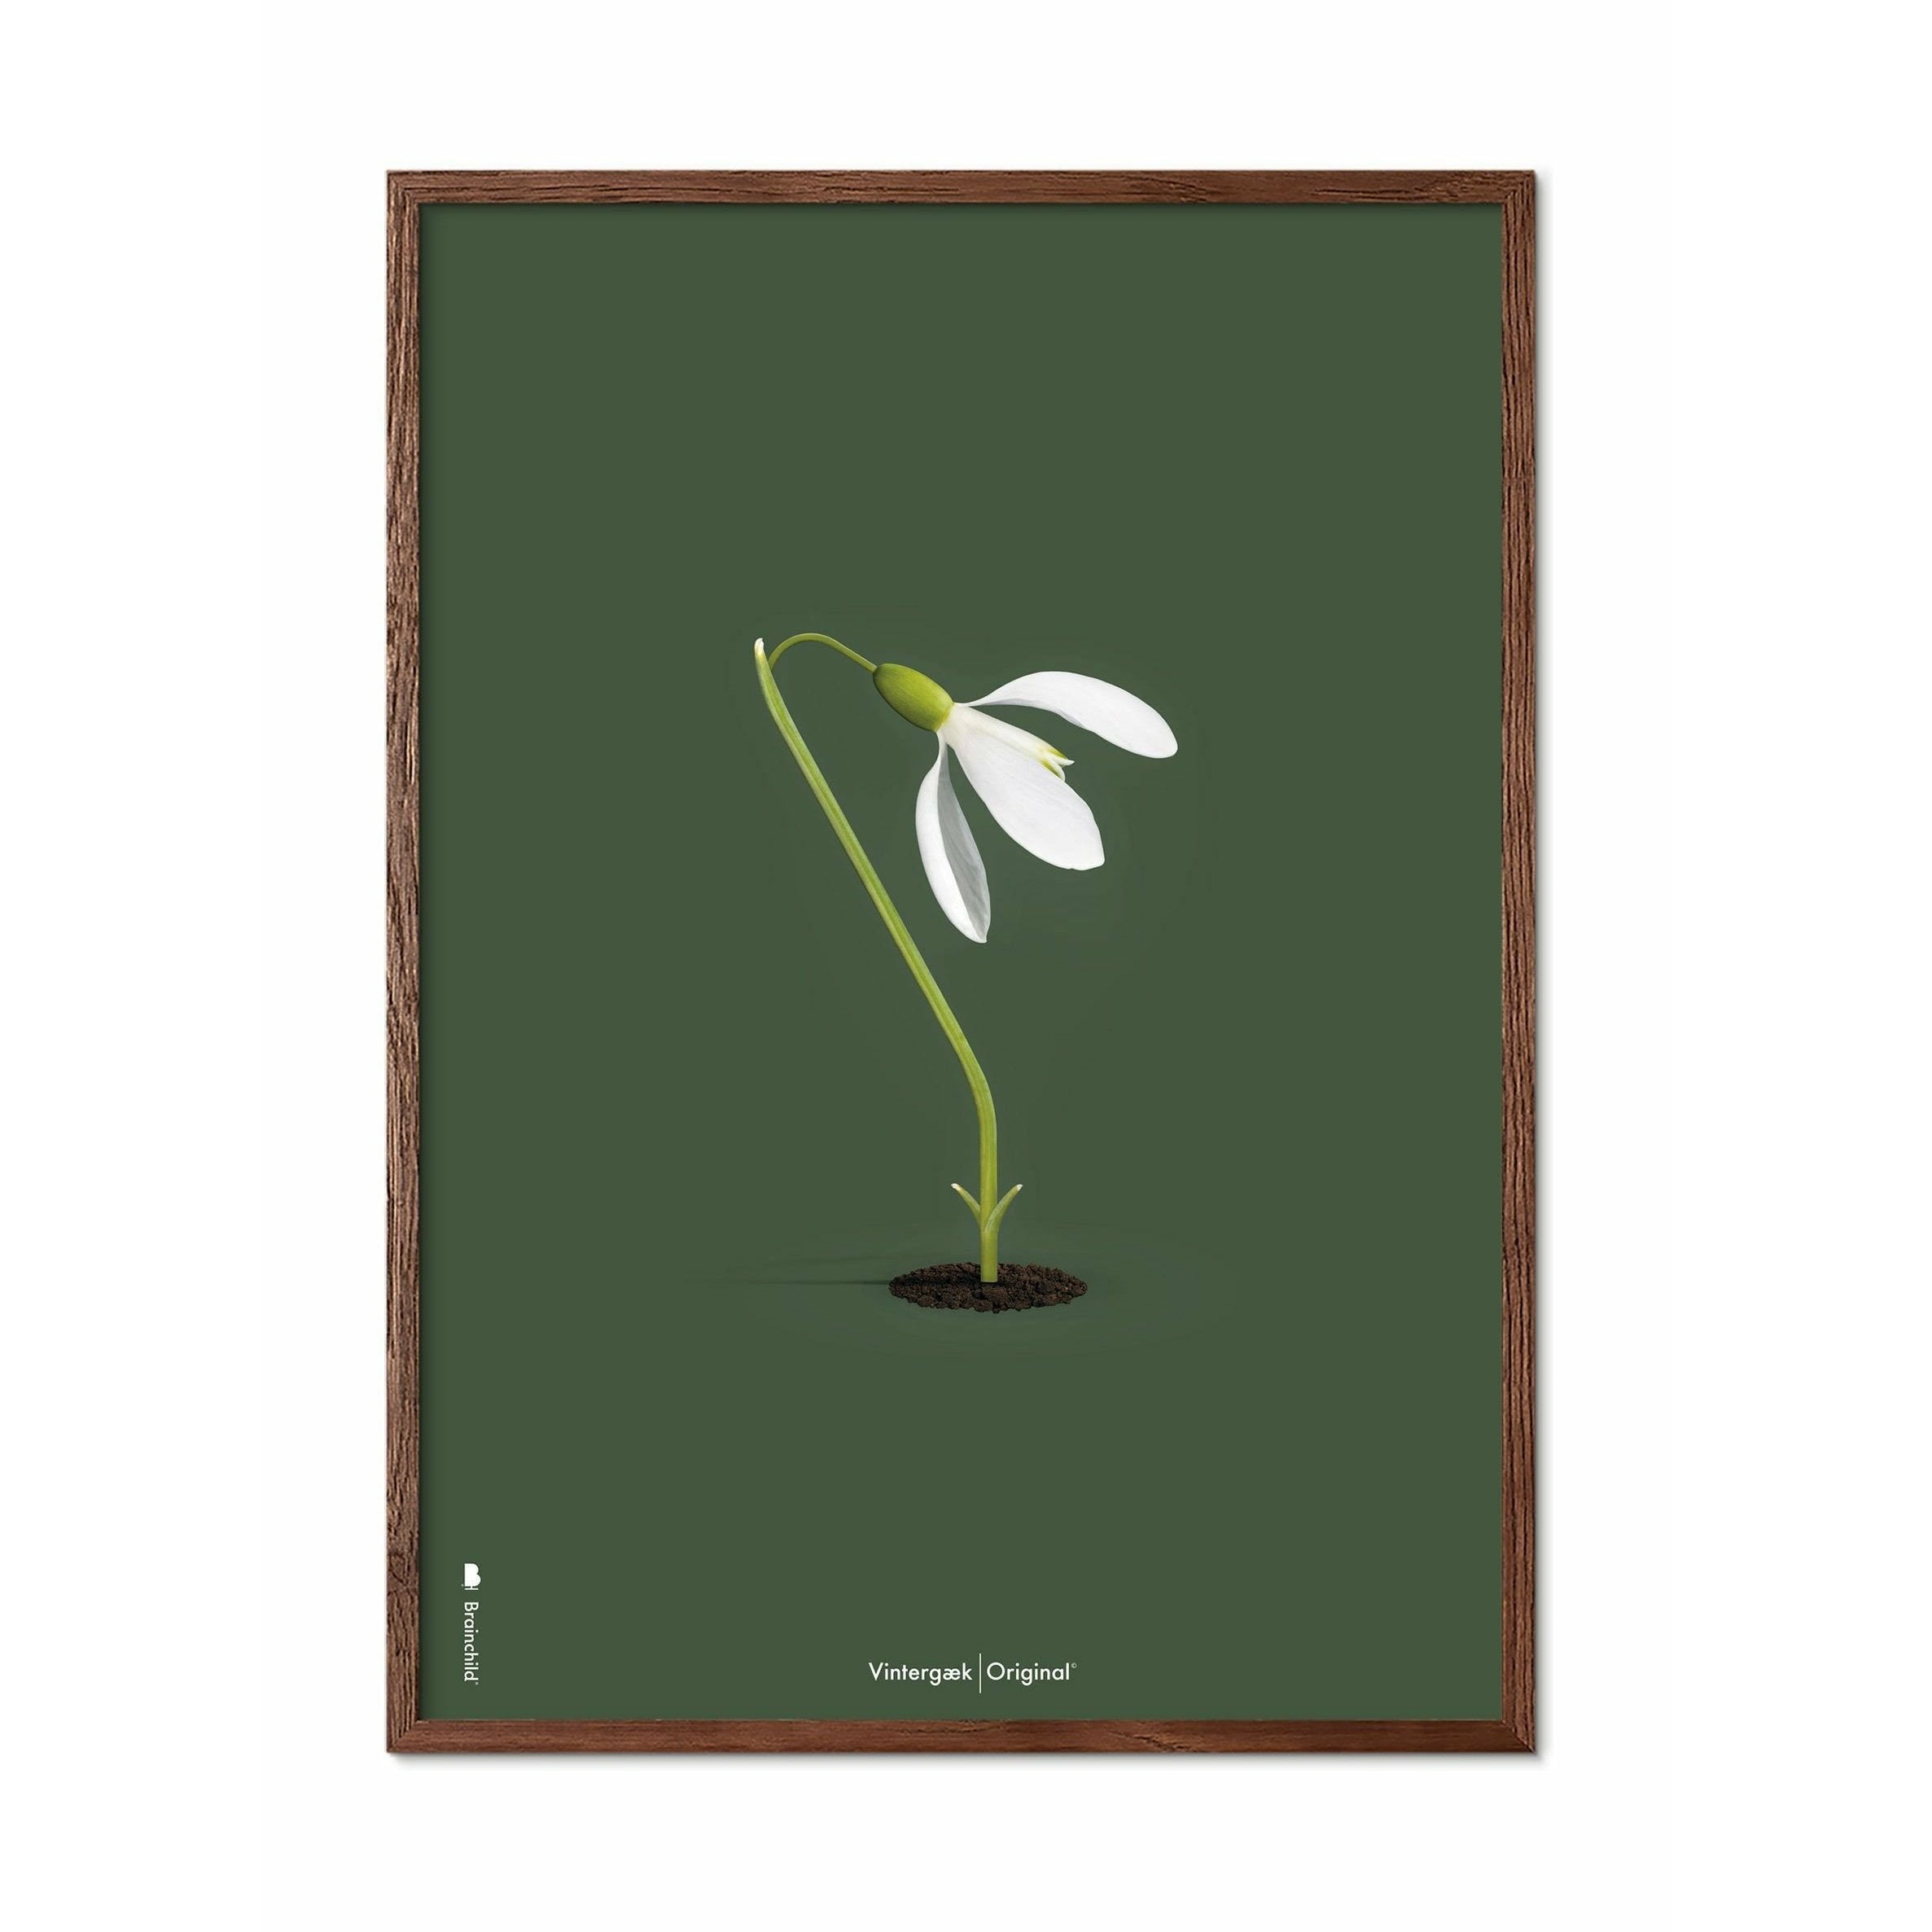 Brainchild Snowdrop Classic Poster, Frame Made of Dark Wood 30x40 cm, grønn bakgrunn